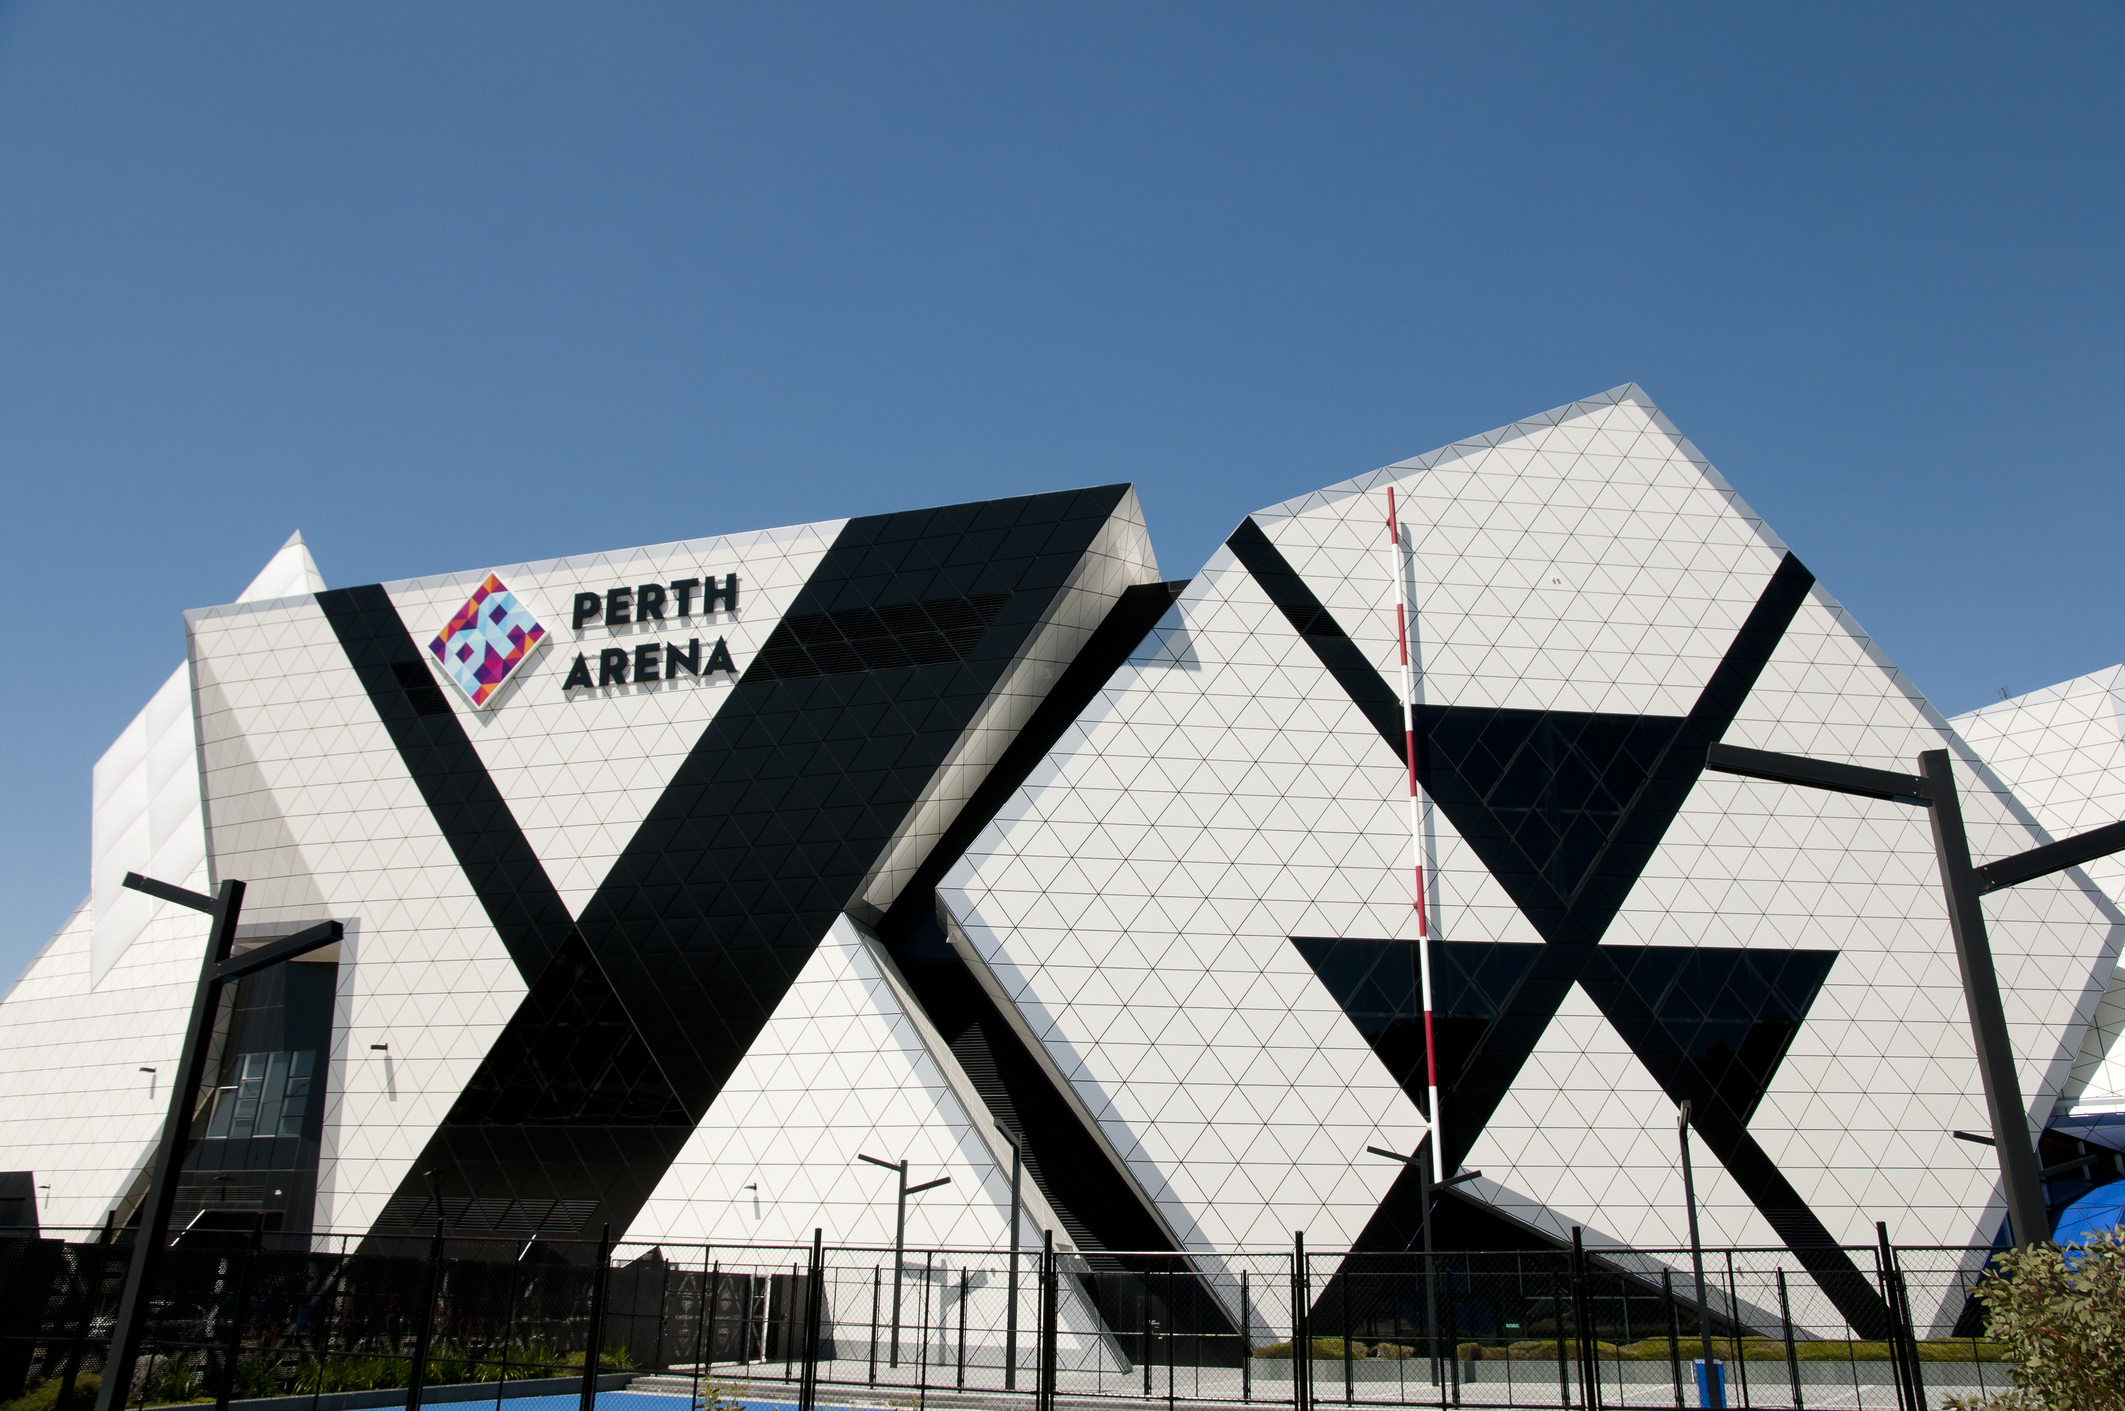 O Loadsensing garante um acesso mais seguro ao Perth Arena